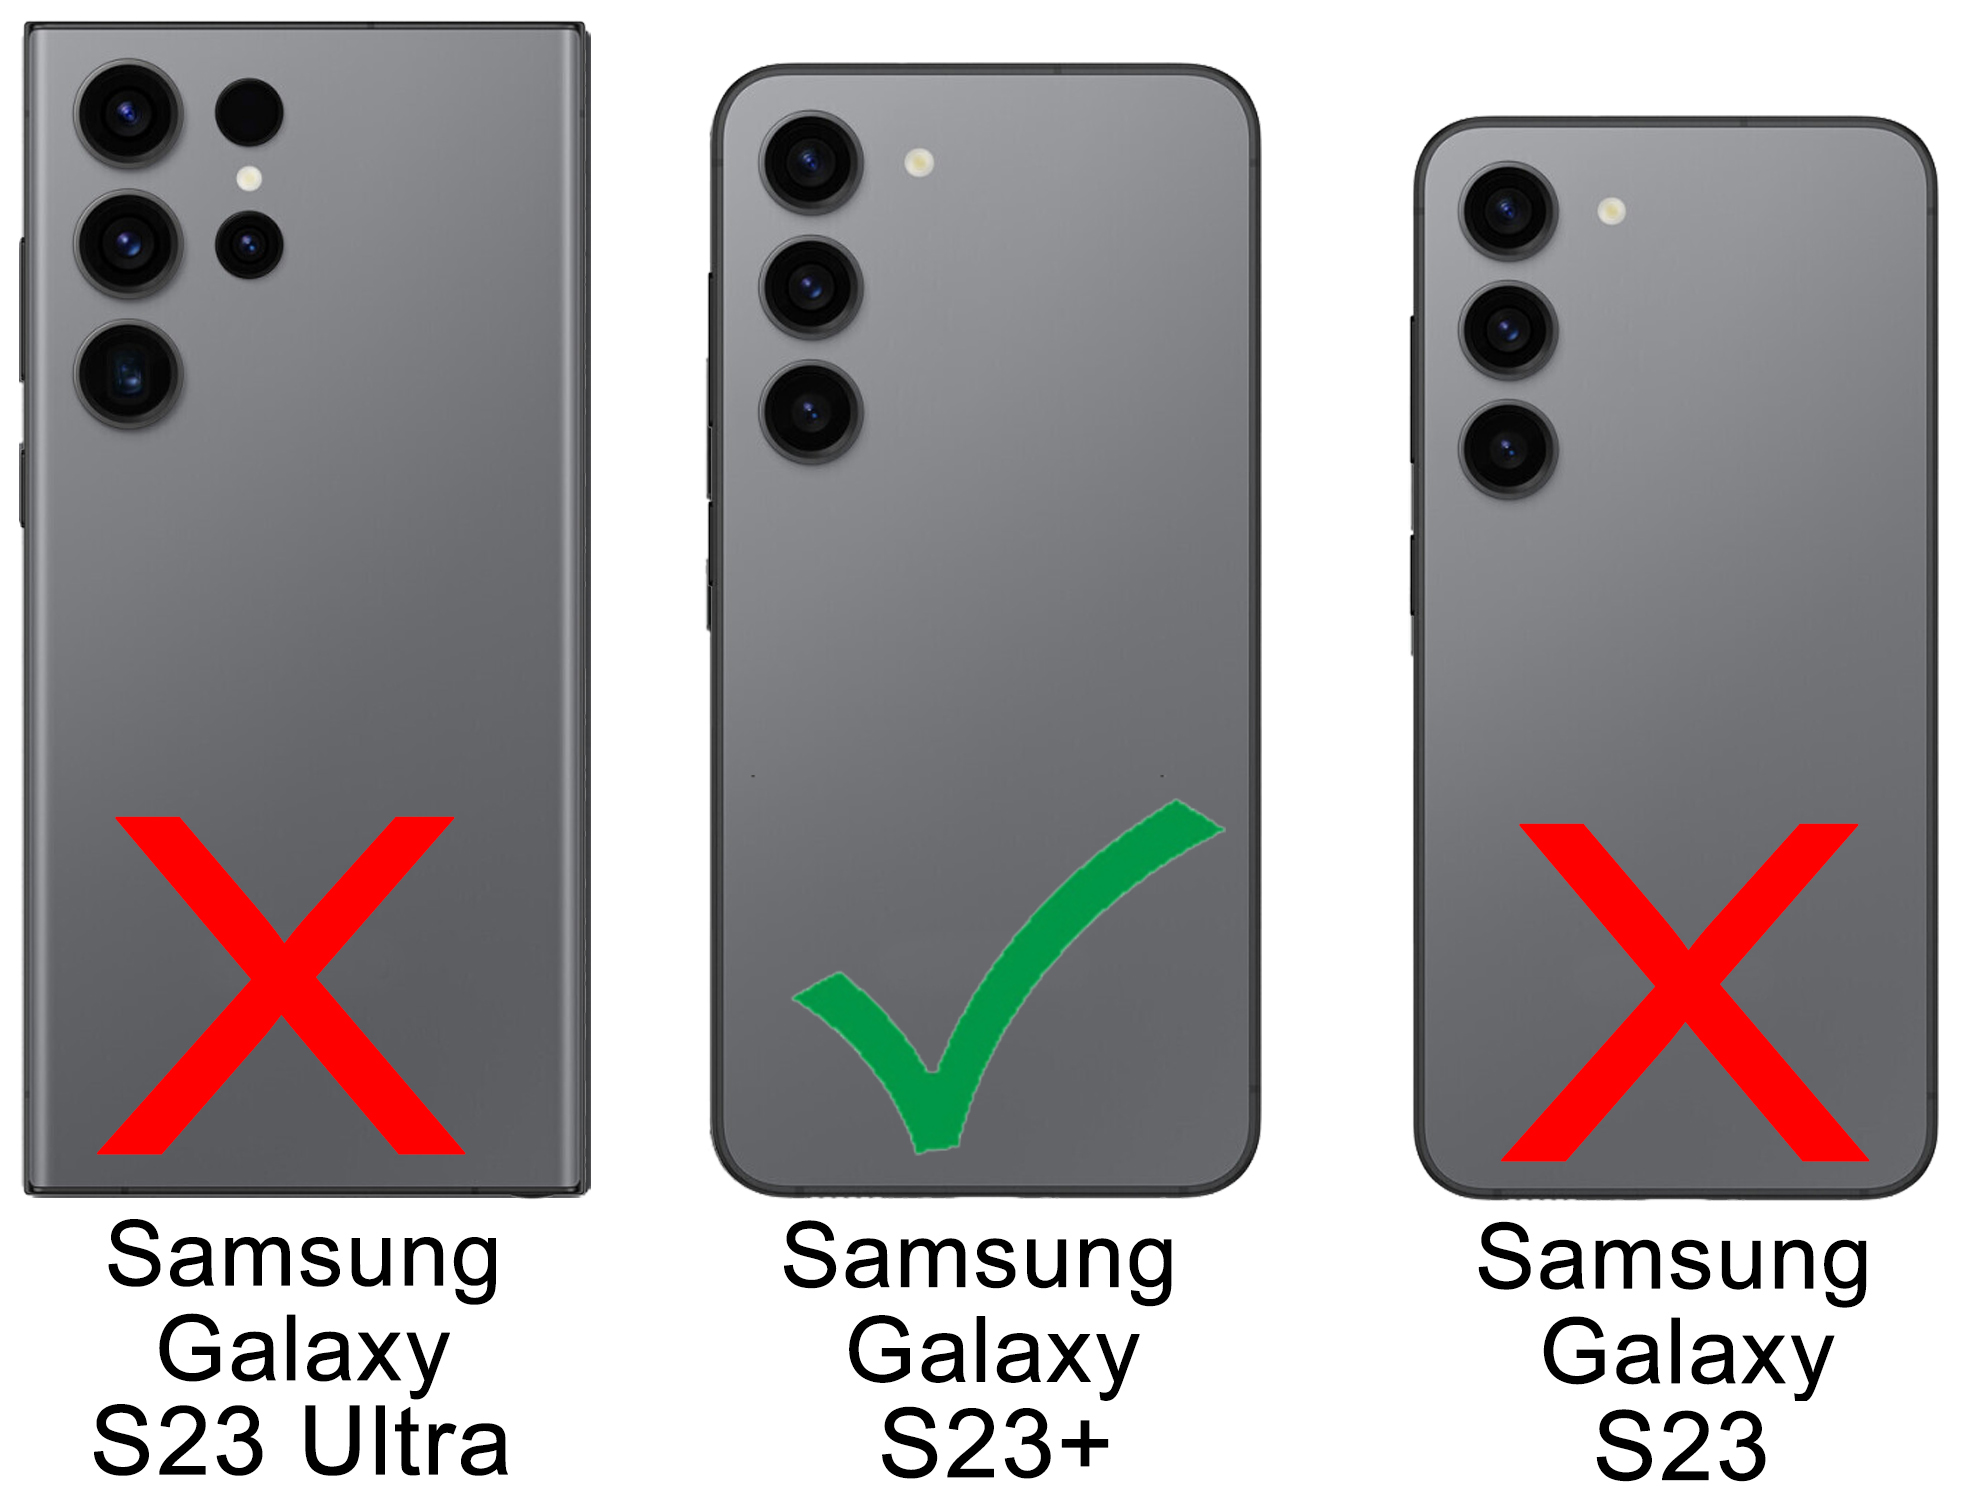 BURKLEY Flip-Case Handytasche Sattelbraun Leder, Galaxy Cover, aus Samsung, Flip Plus, S23